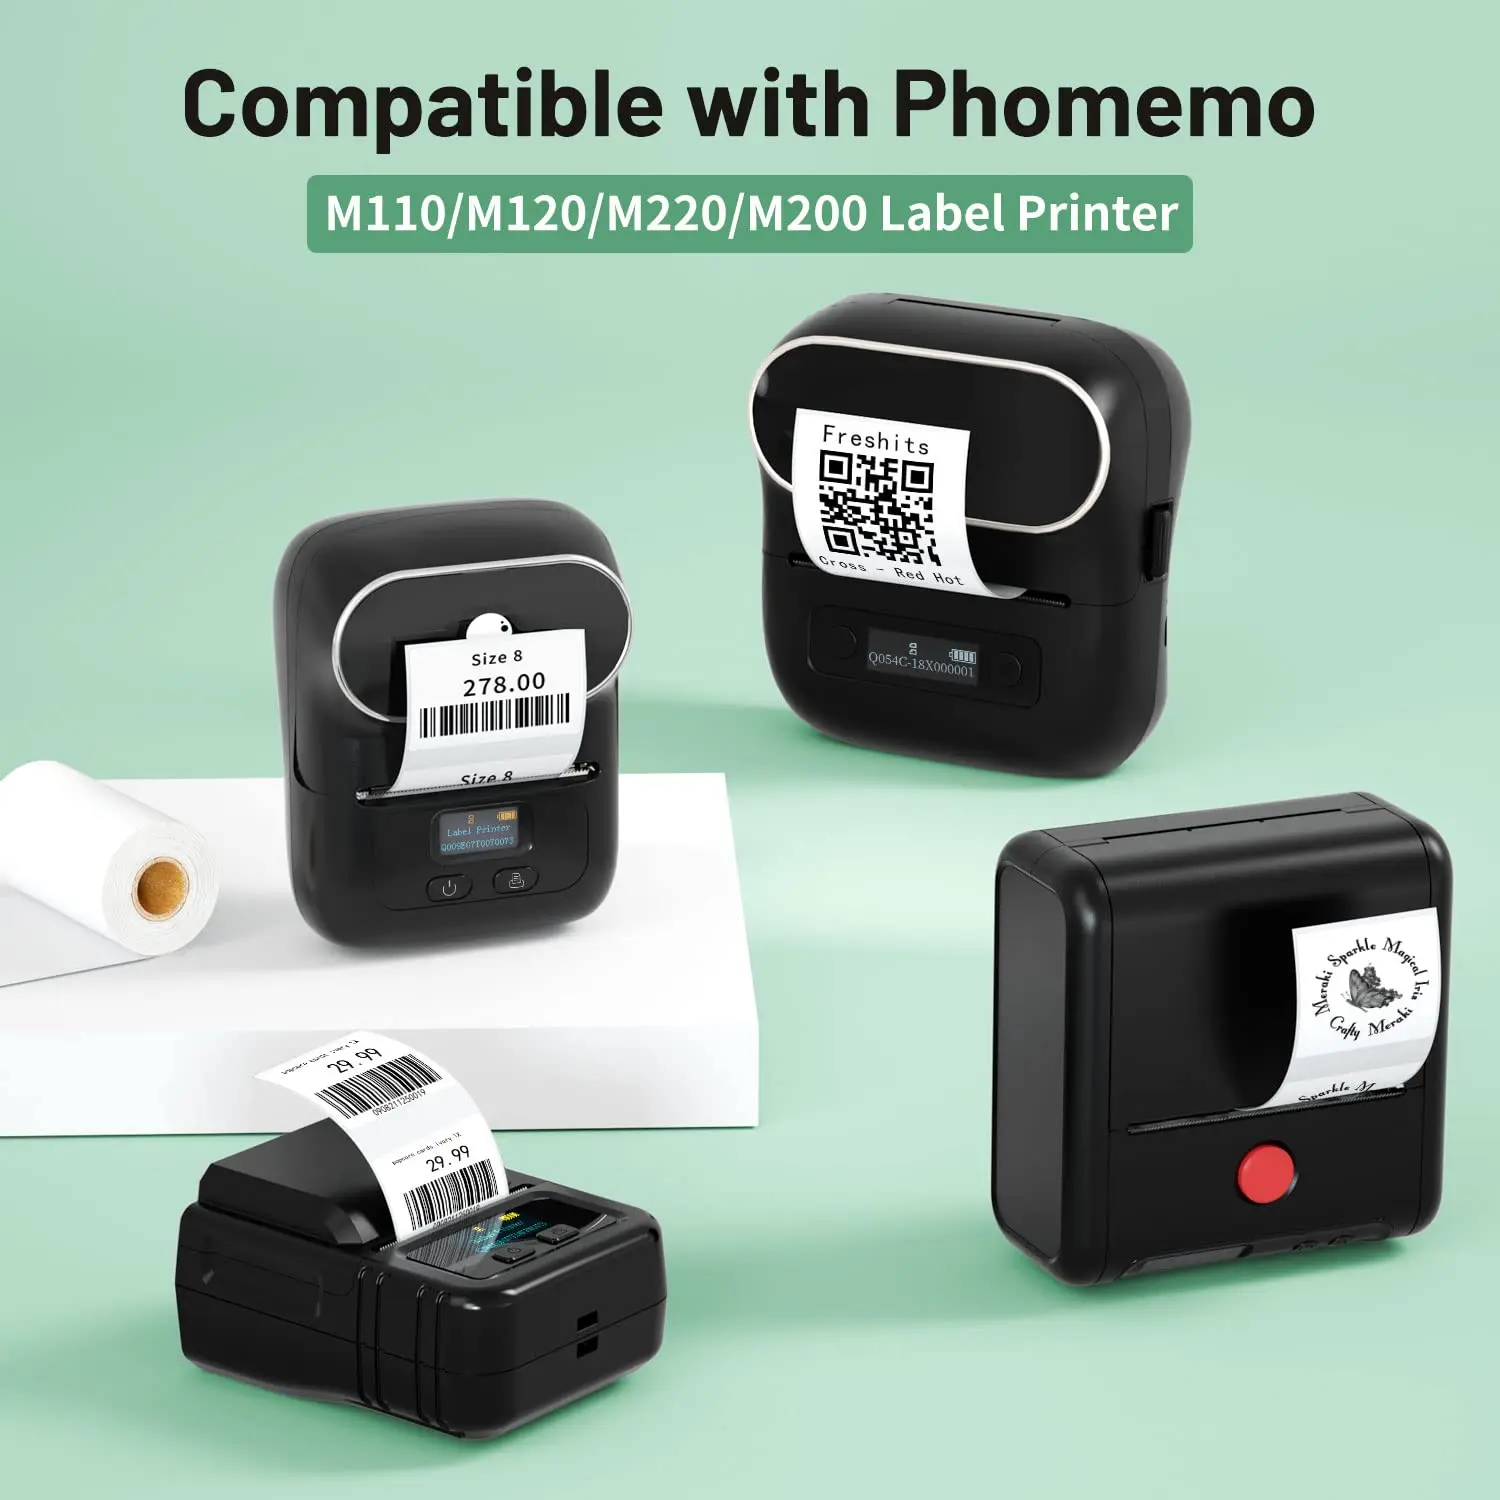 Устройство для этикеток, бумага для этикеток Phomemo M110, многофункциональная термонаклейка для принтера Phomemo M110 M221 M200 M220